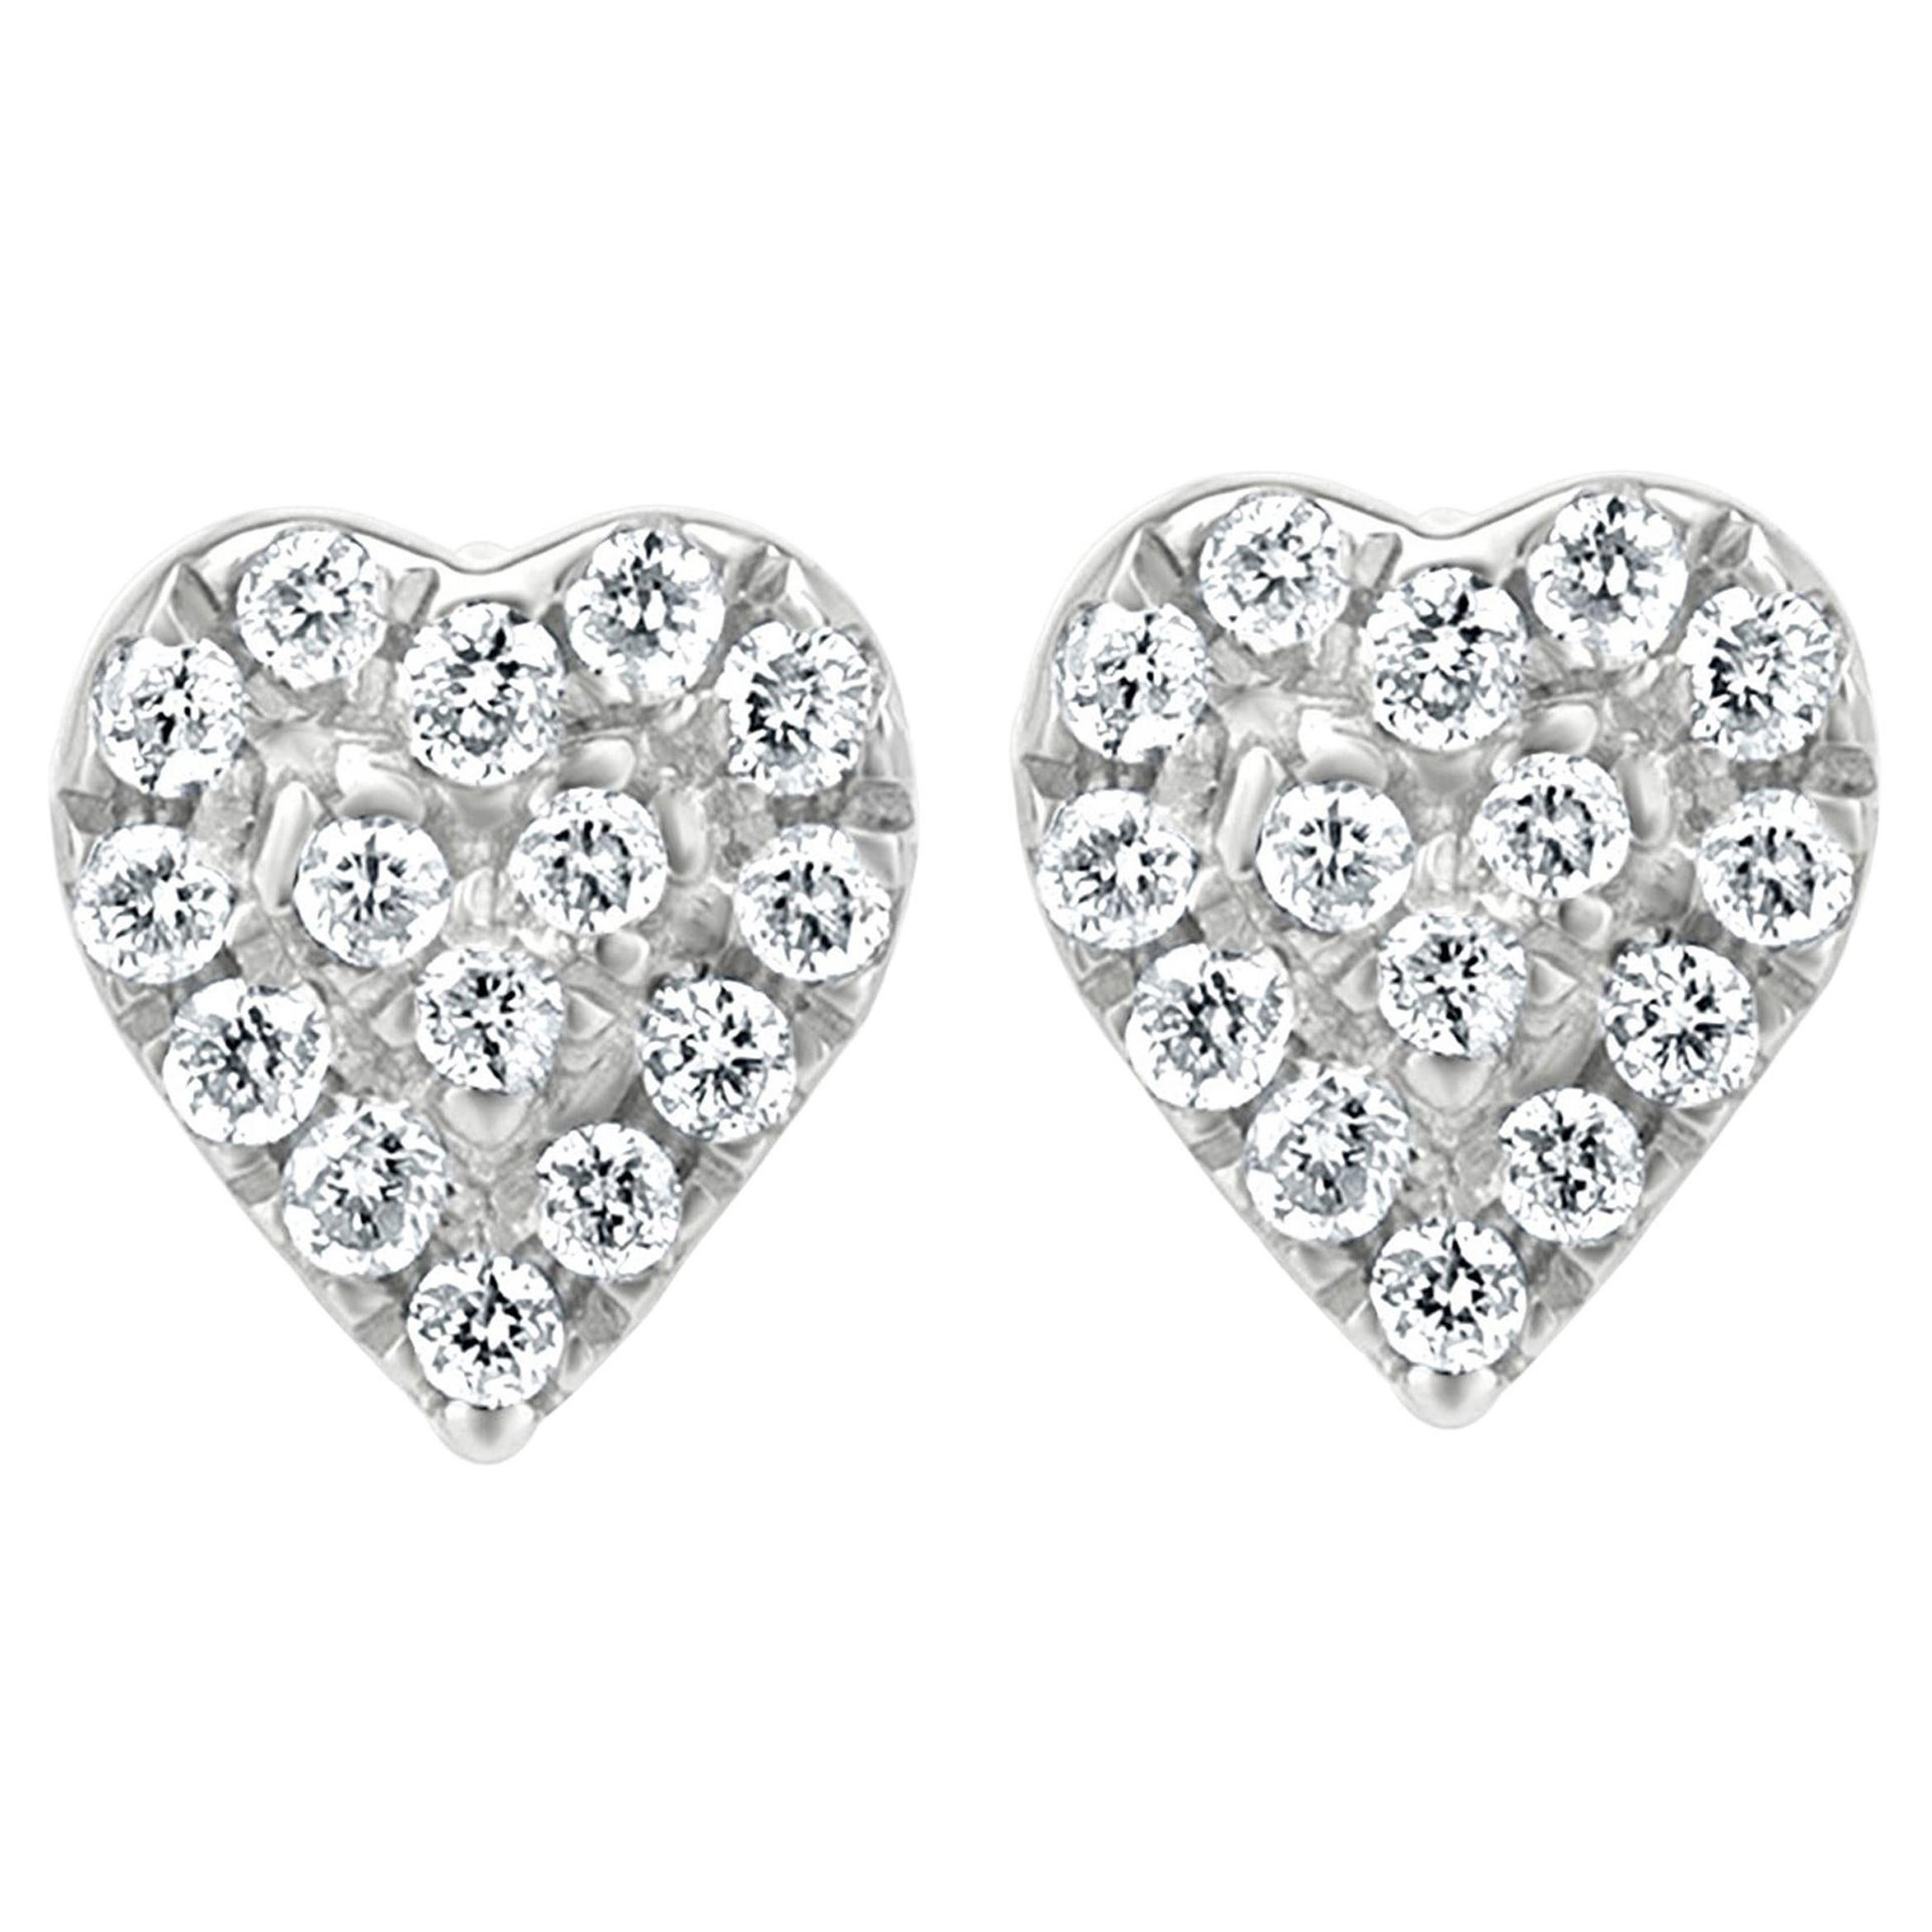 Luxle 1.4 Cttw. Diamond Heart-Shaped Stud Earrings in 18K Rose Gold For ...